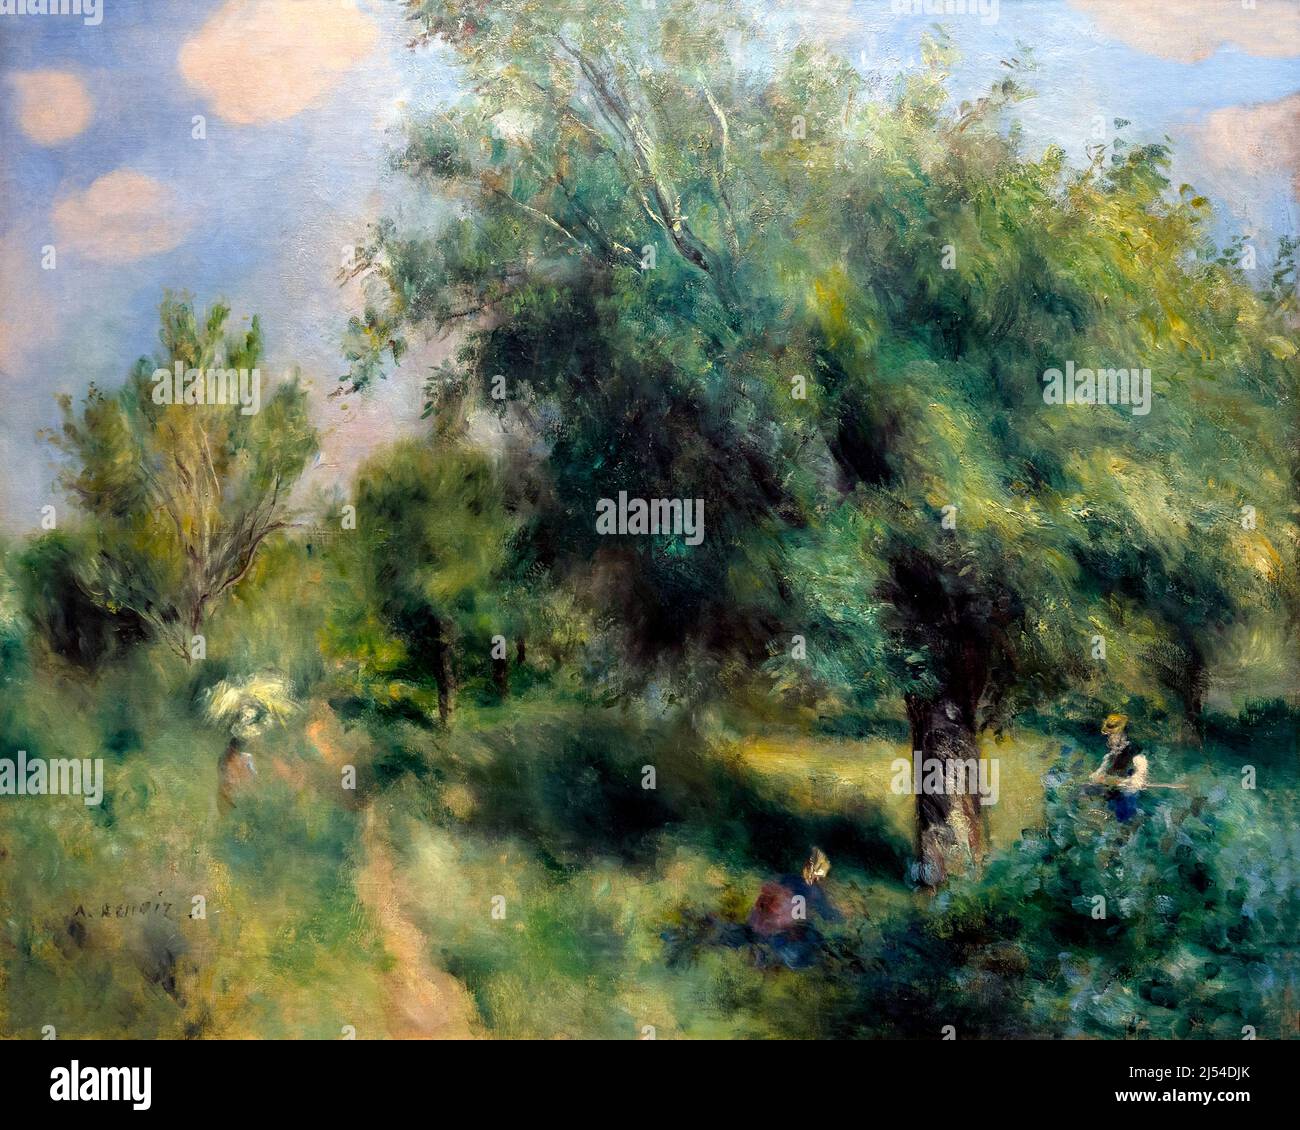 L'albero inglese delle Cere, l'Orchard a Louveciennes, le Poirier d'Angleterre, le Verger a Louveciennes, Pierre-Auguste Renoir, 1875, Musee D'Orsay, Par Foto Stock